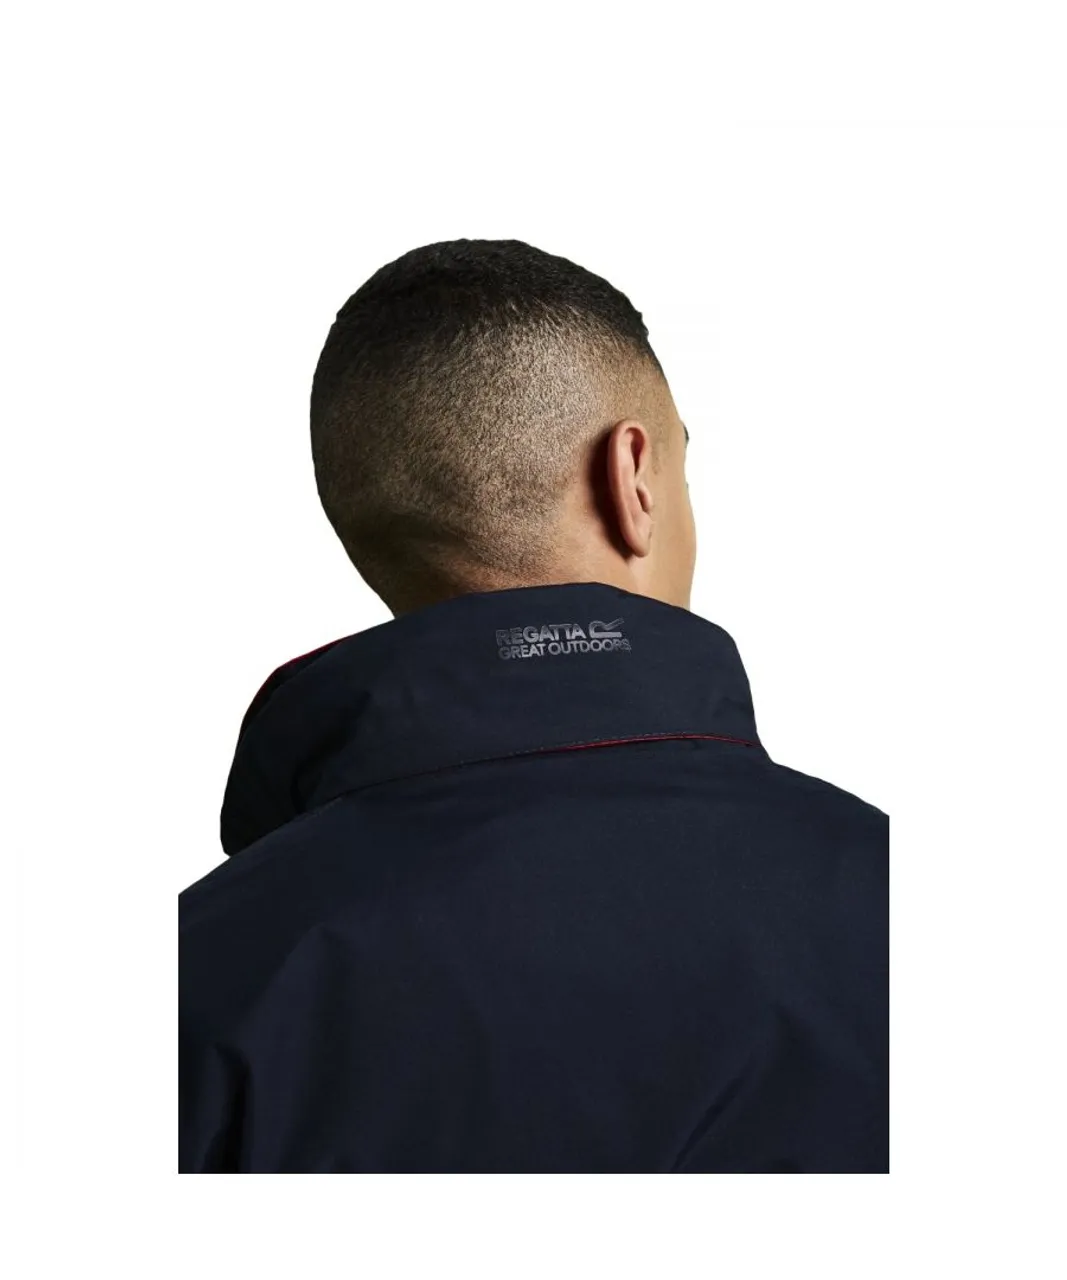 Regatta Mens Standout Ardmore Jacket (Waterproof & Windproof) - Navy